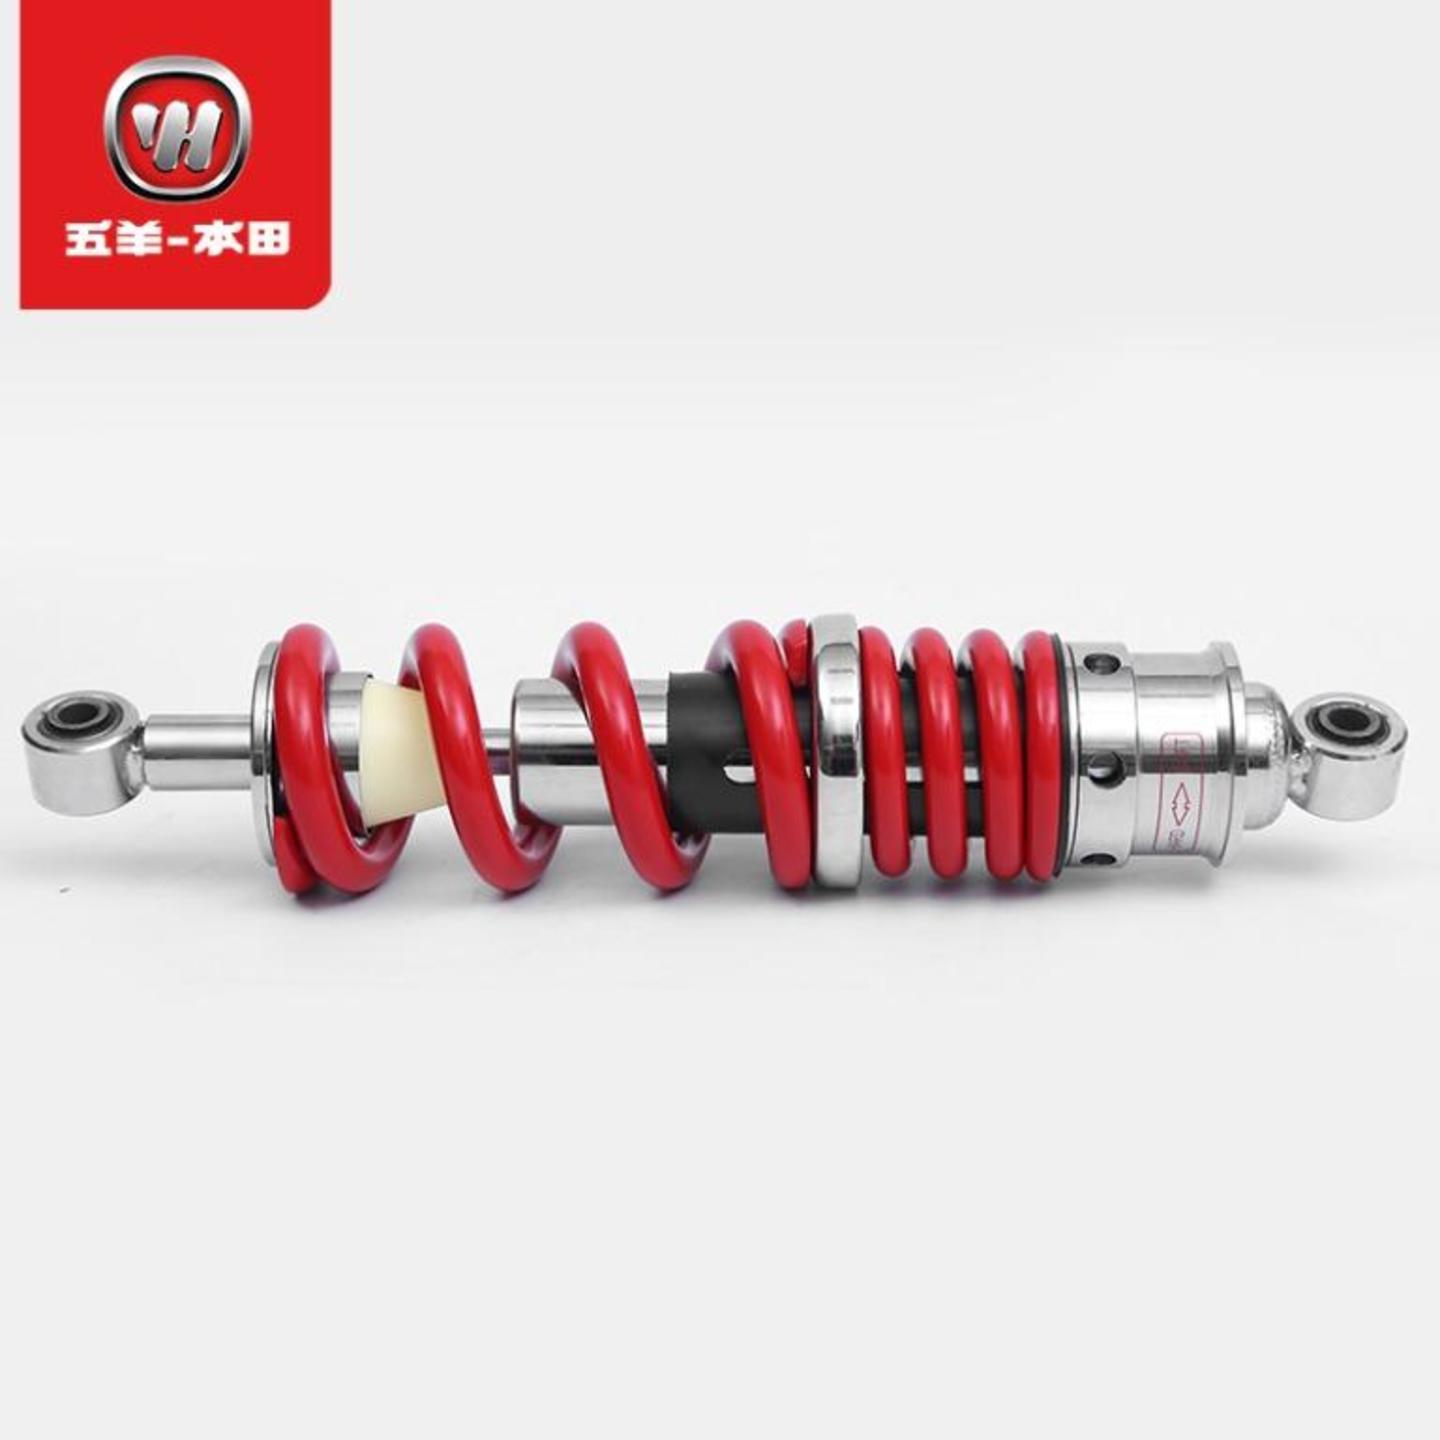 Honda CB190R rear shock absorbers suspensions